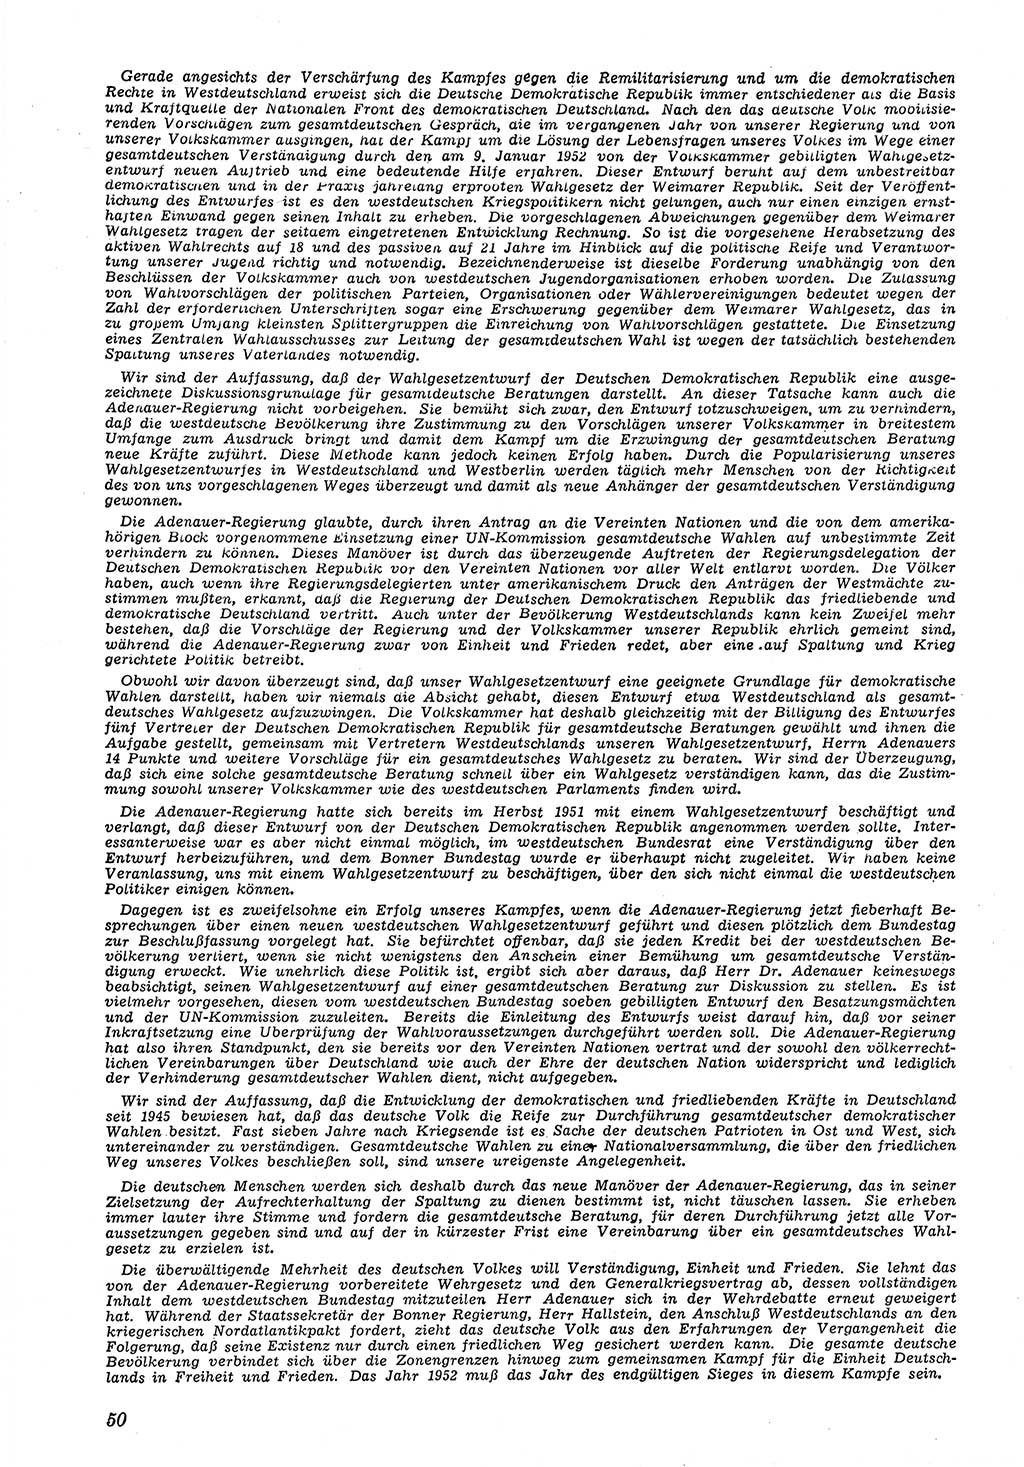 Neue Justiz (NJ), Zeitschrift für Recht und Rechtswissenschaft [Deutsche Demokratische Republik (DDR)], 6. Jahrgang 1952, Seite 50 (NJ DDR 1952, S. 50)